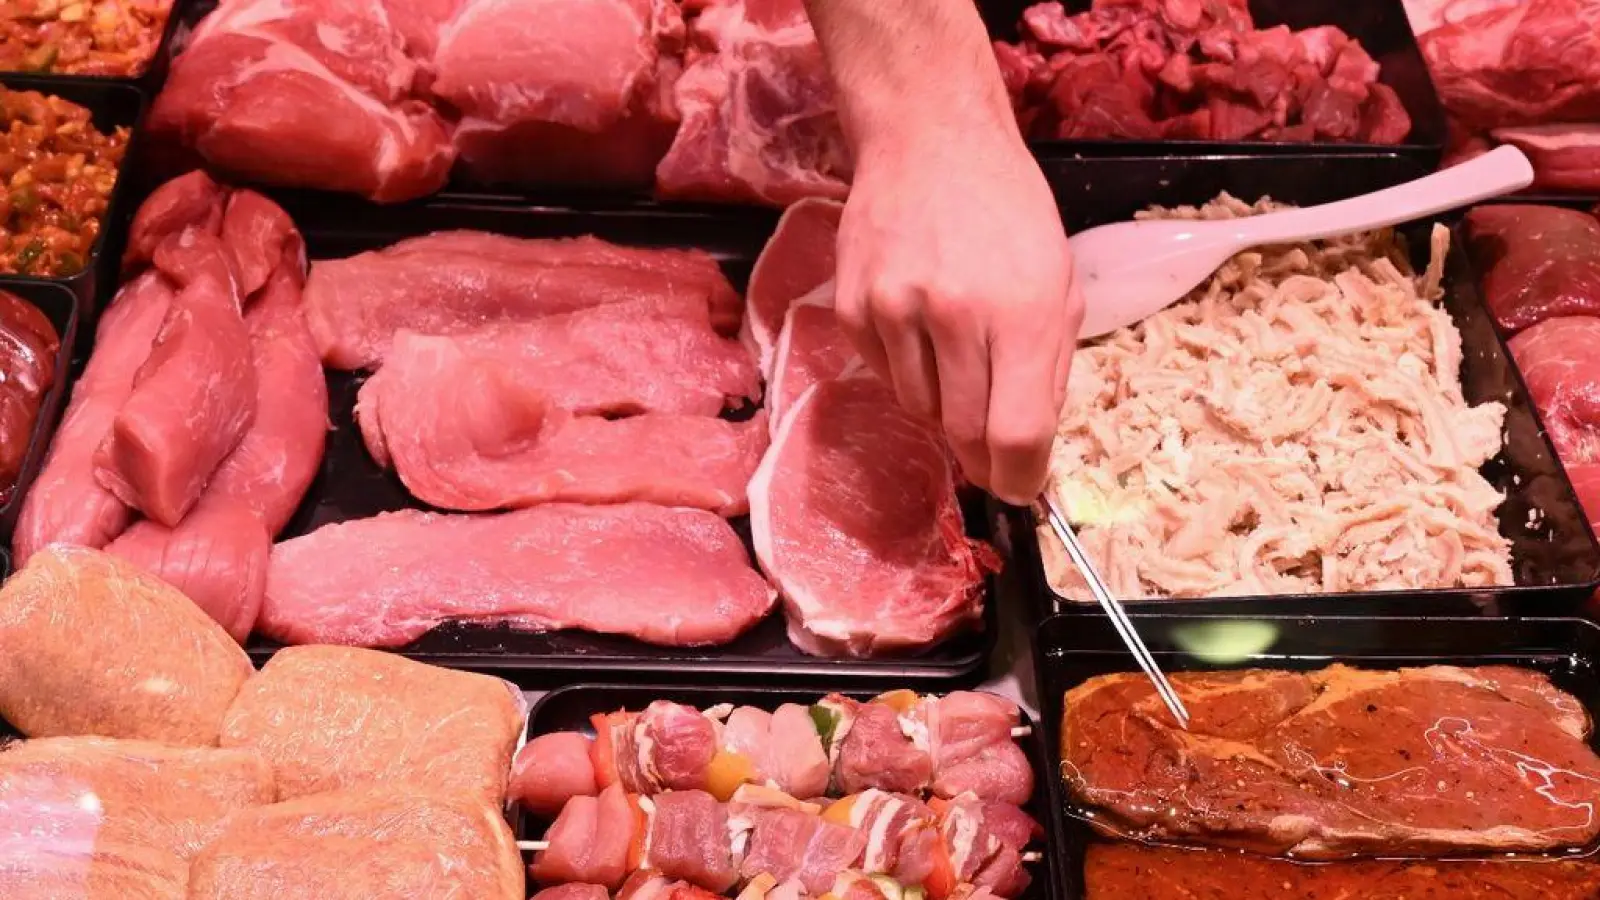 Die Kennzeichnungspflicht für unverpacktes Fleisch wird sowohl von Metzgereien als auch von Supermärkten nicht vollständig umgesetzt. (Foto: Bernd Weißbrod/dpa)